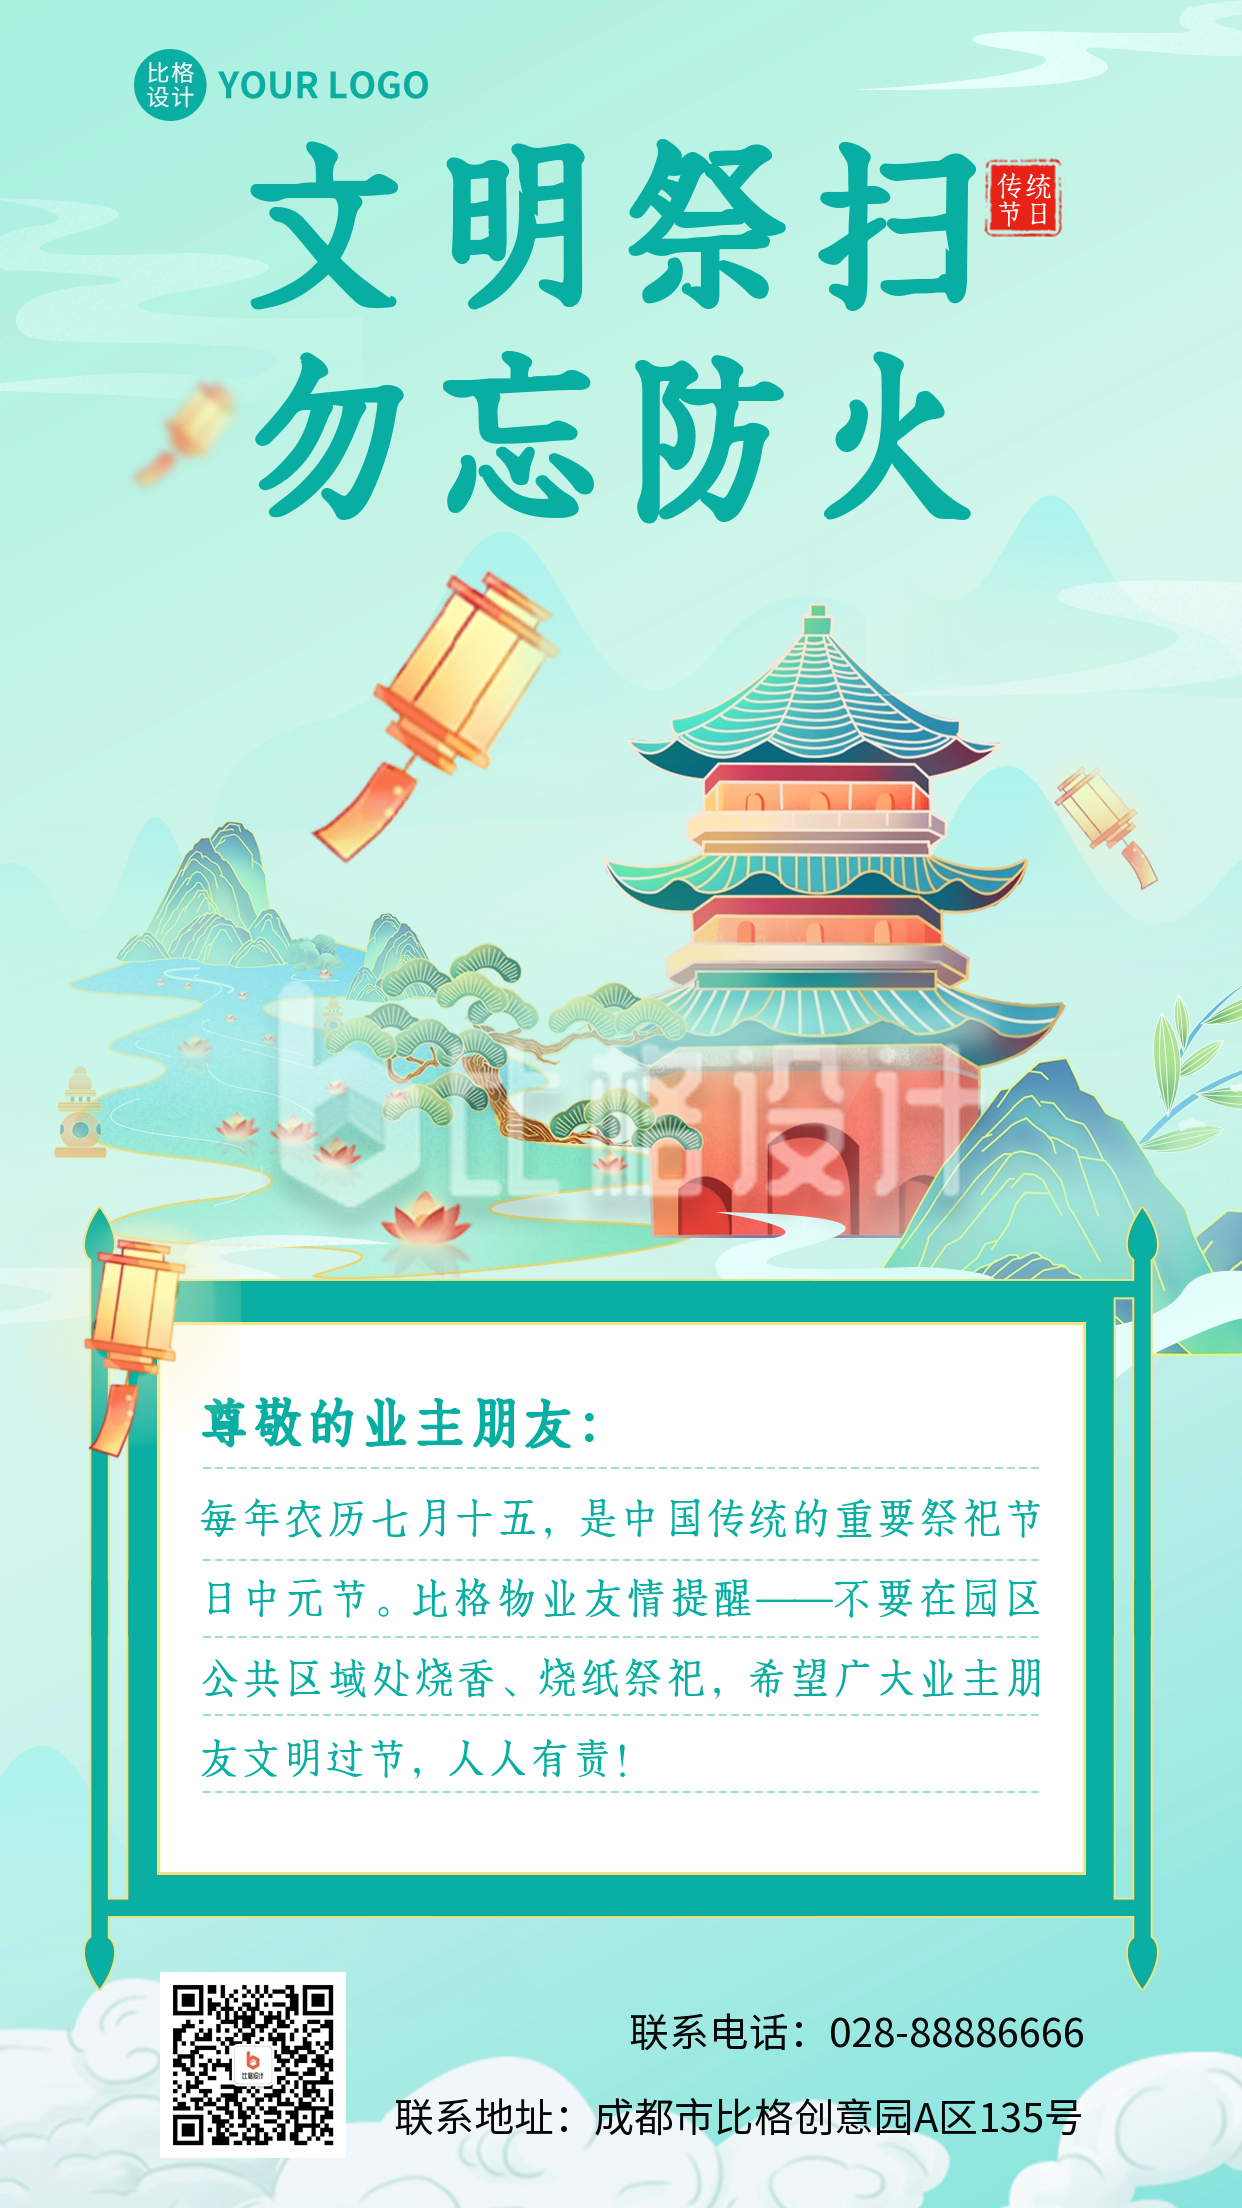 中元节祭祀物业通知海报